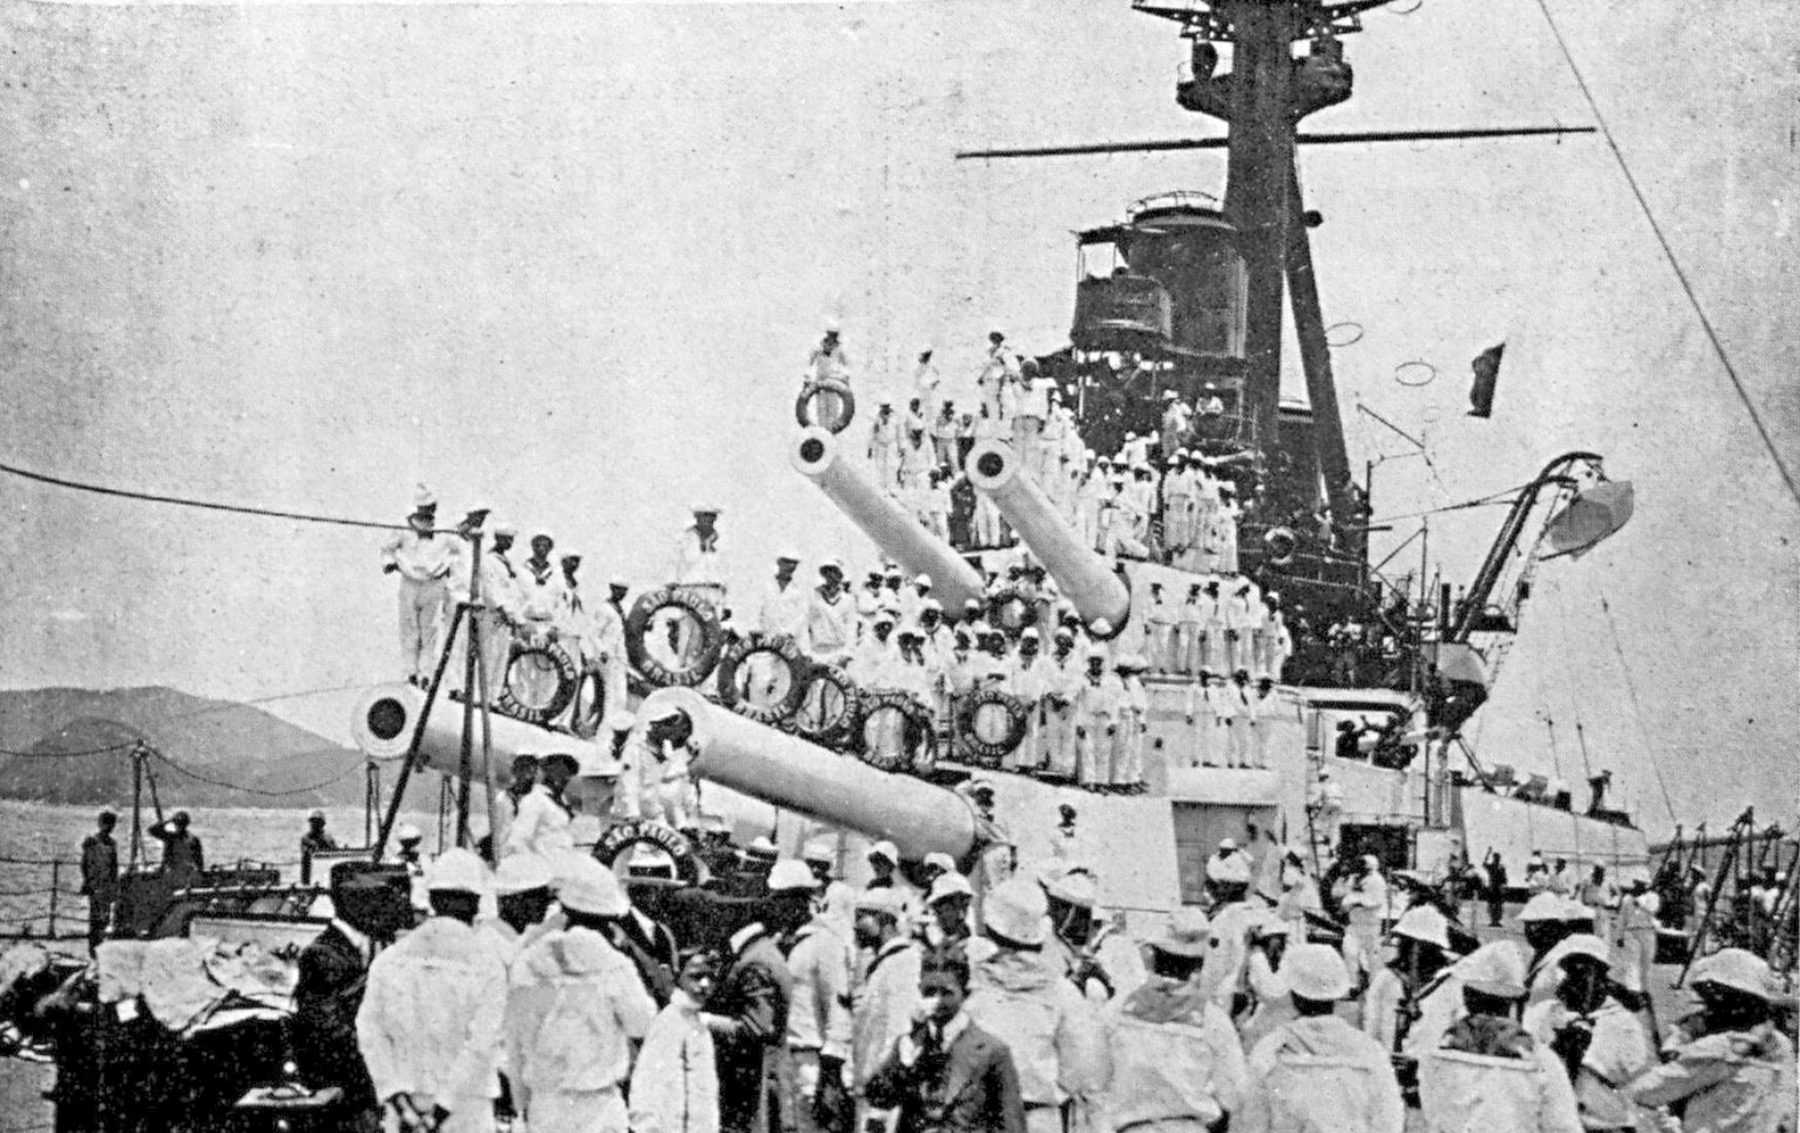 Fotografia em preto e branco. Um navio de guerra com diversos canhões, repleto de homens vestindo calças, camisas e boinas brancas, com lenços ao redor do pescoço.